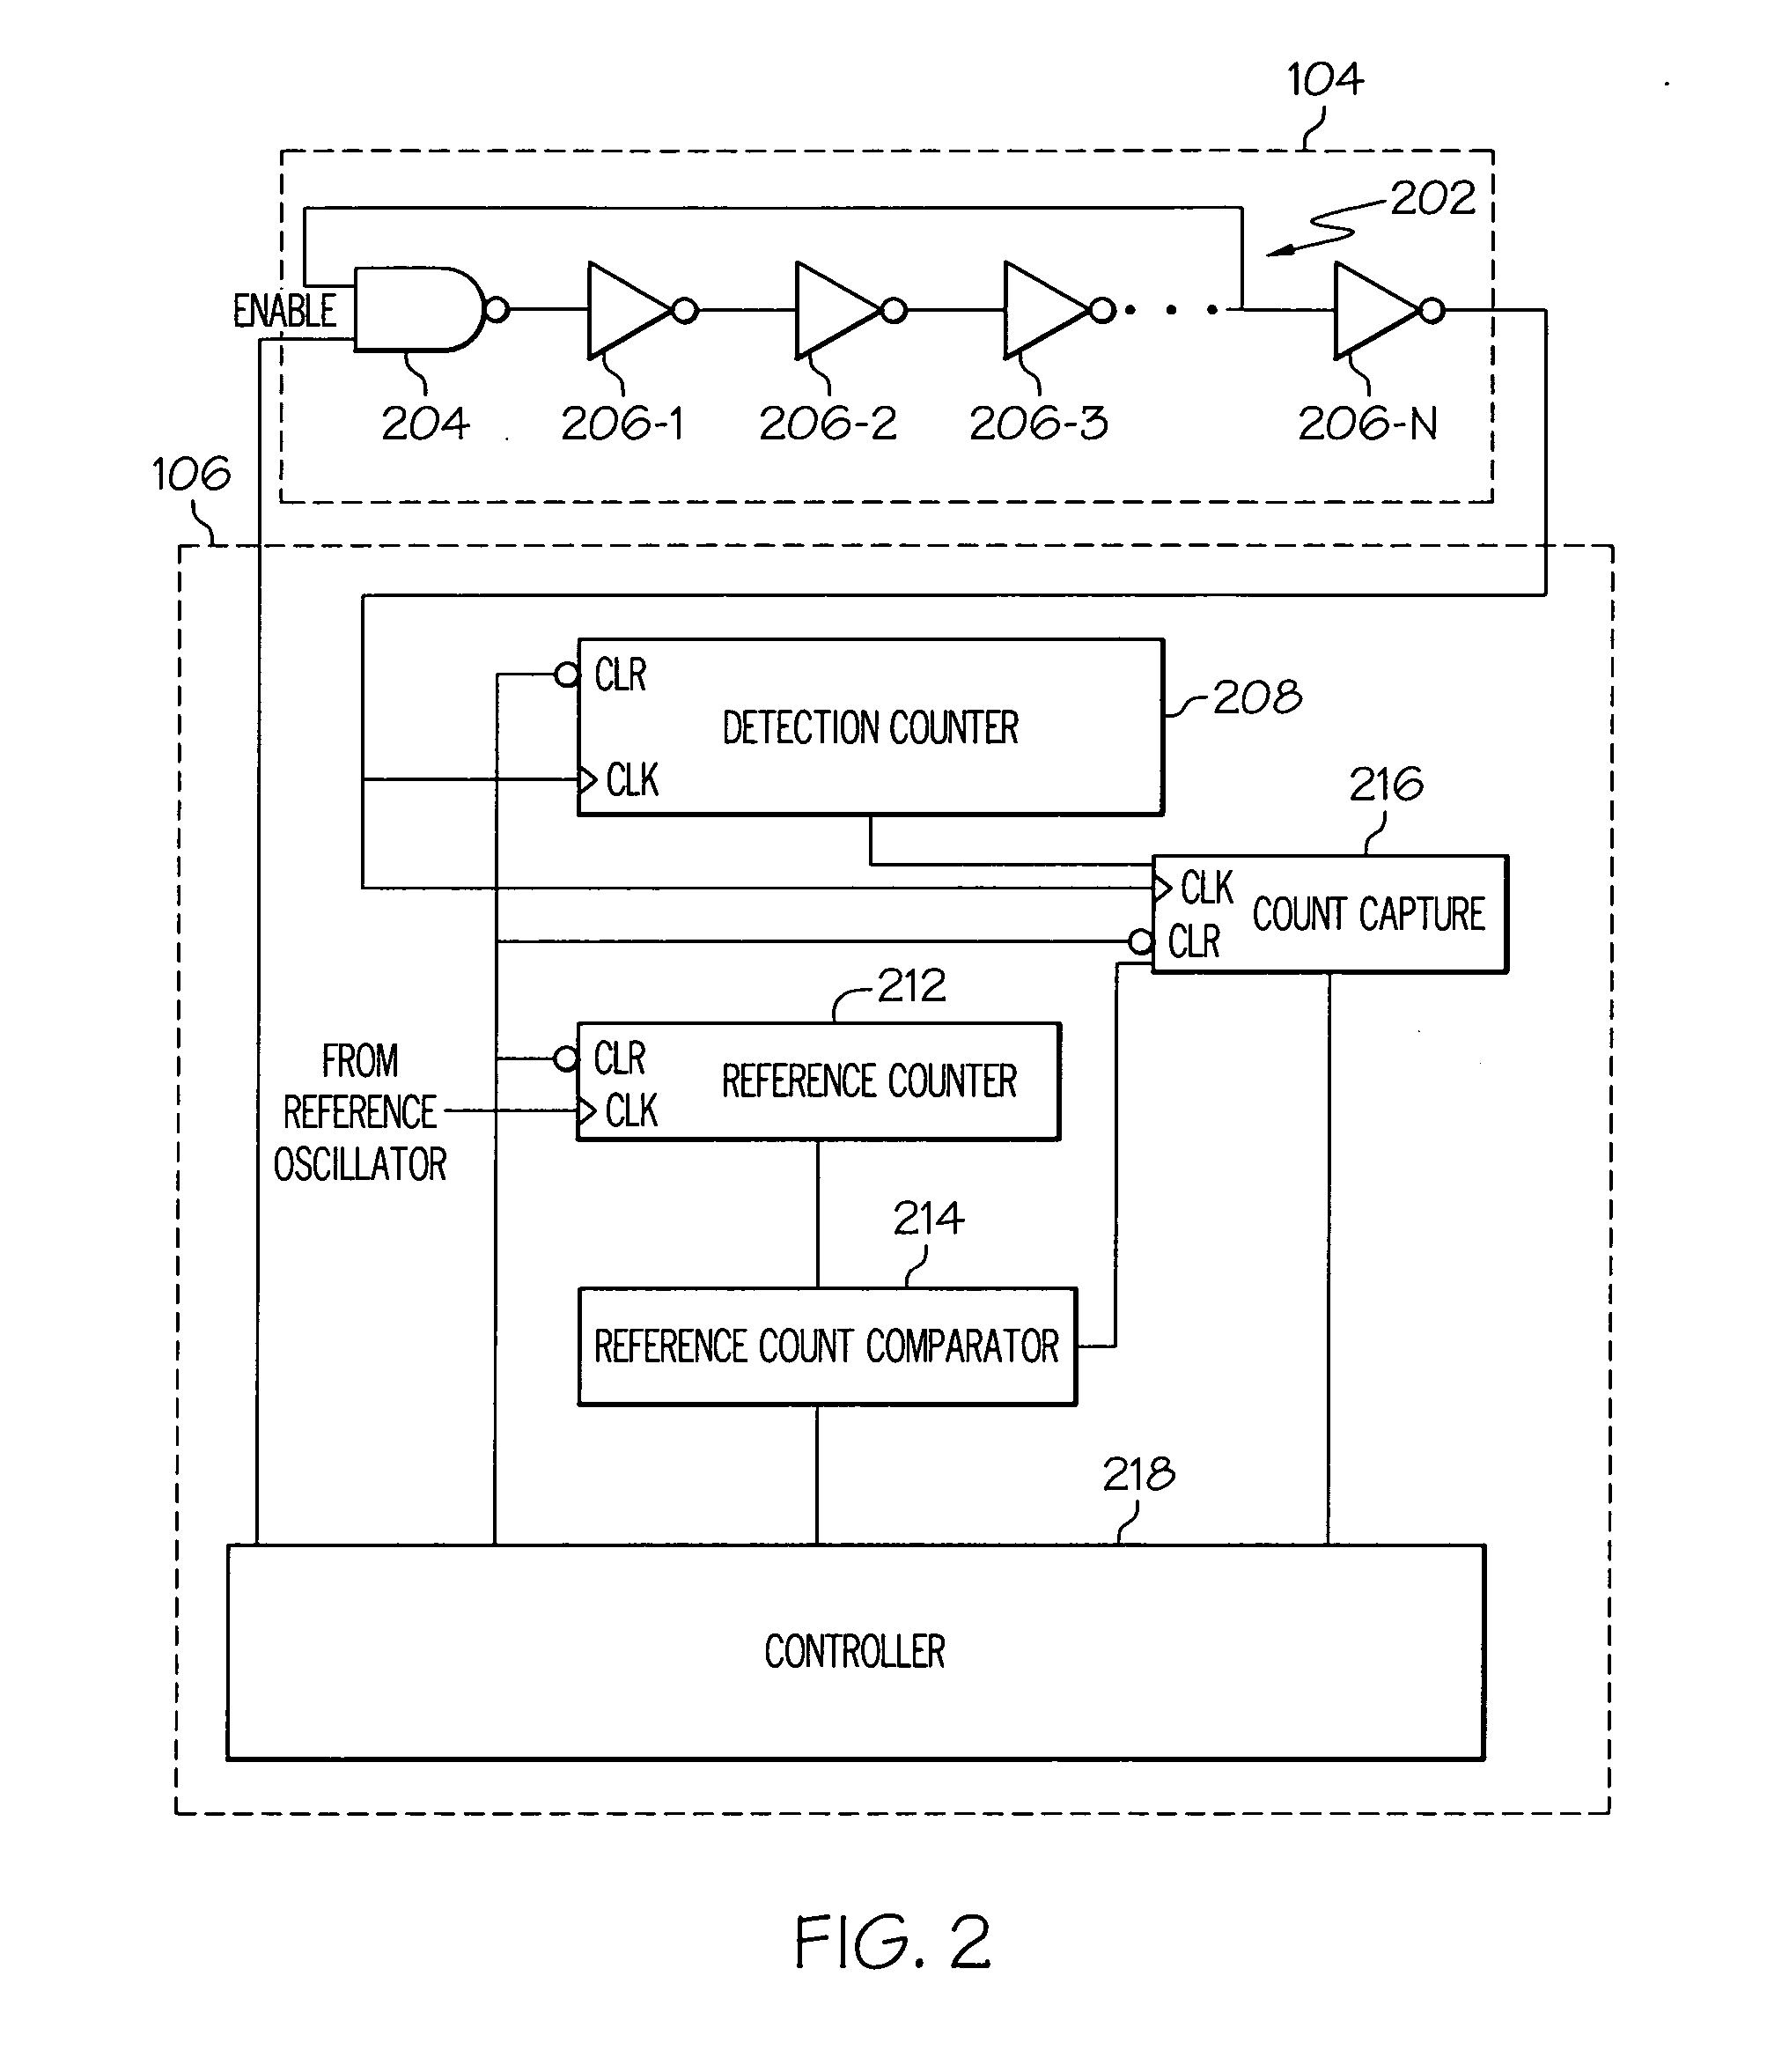 Tamper monitor circuit